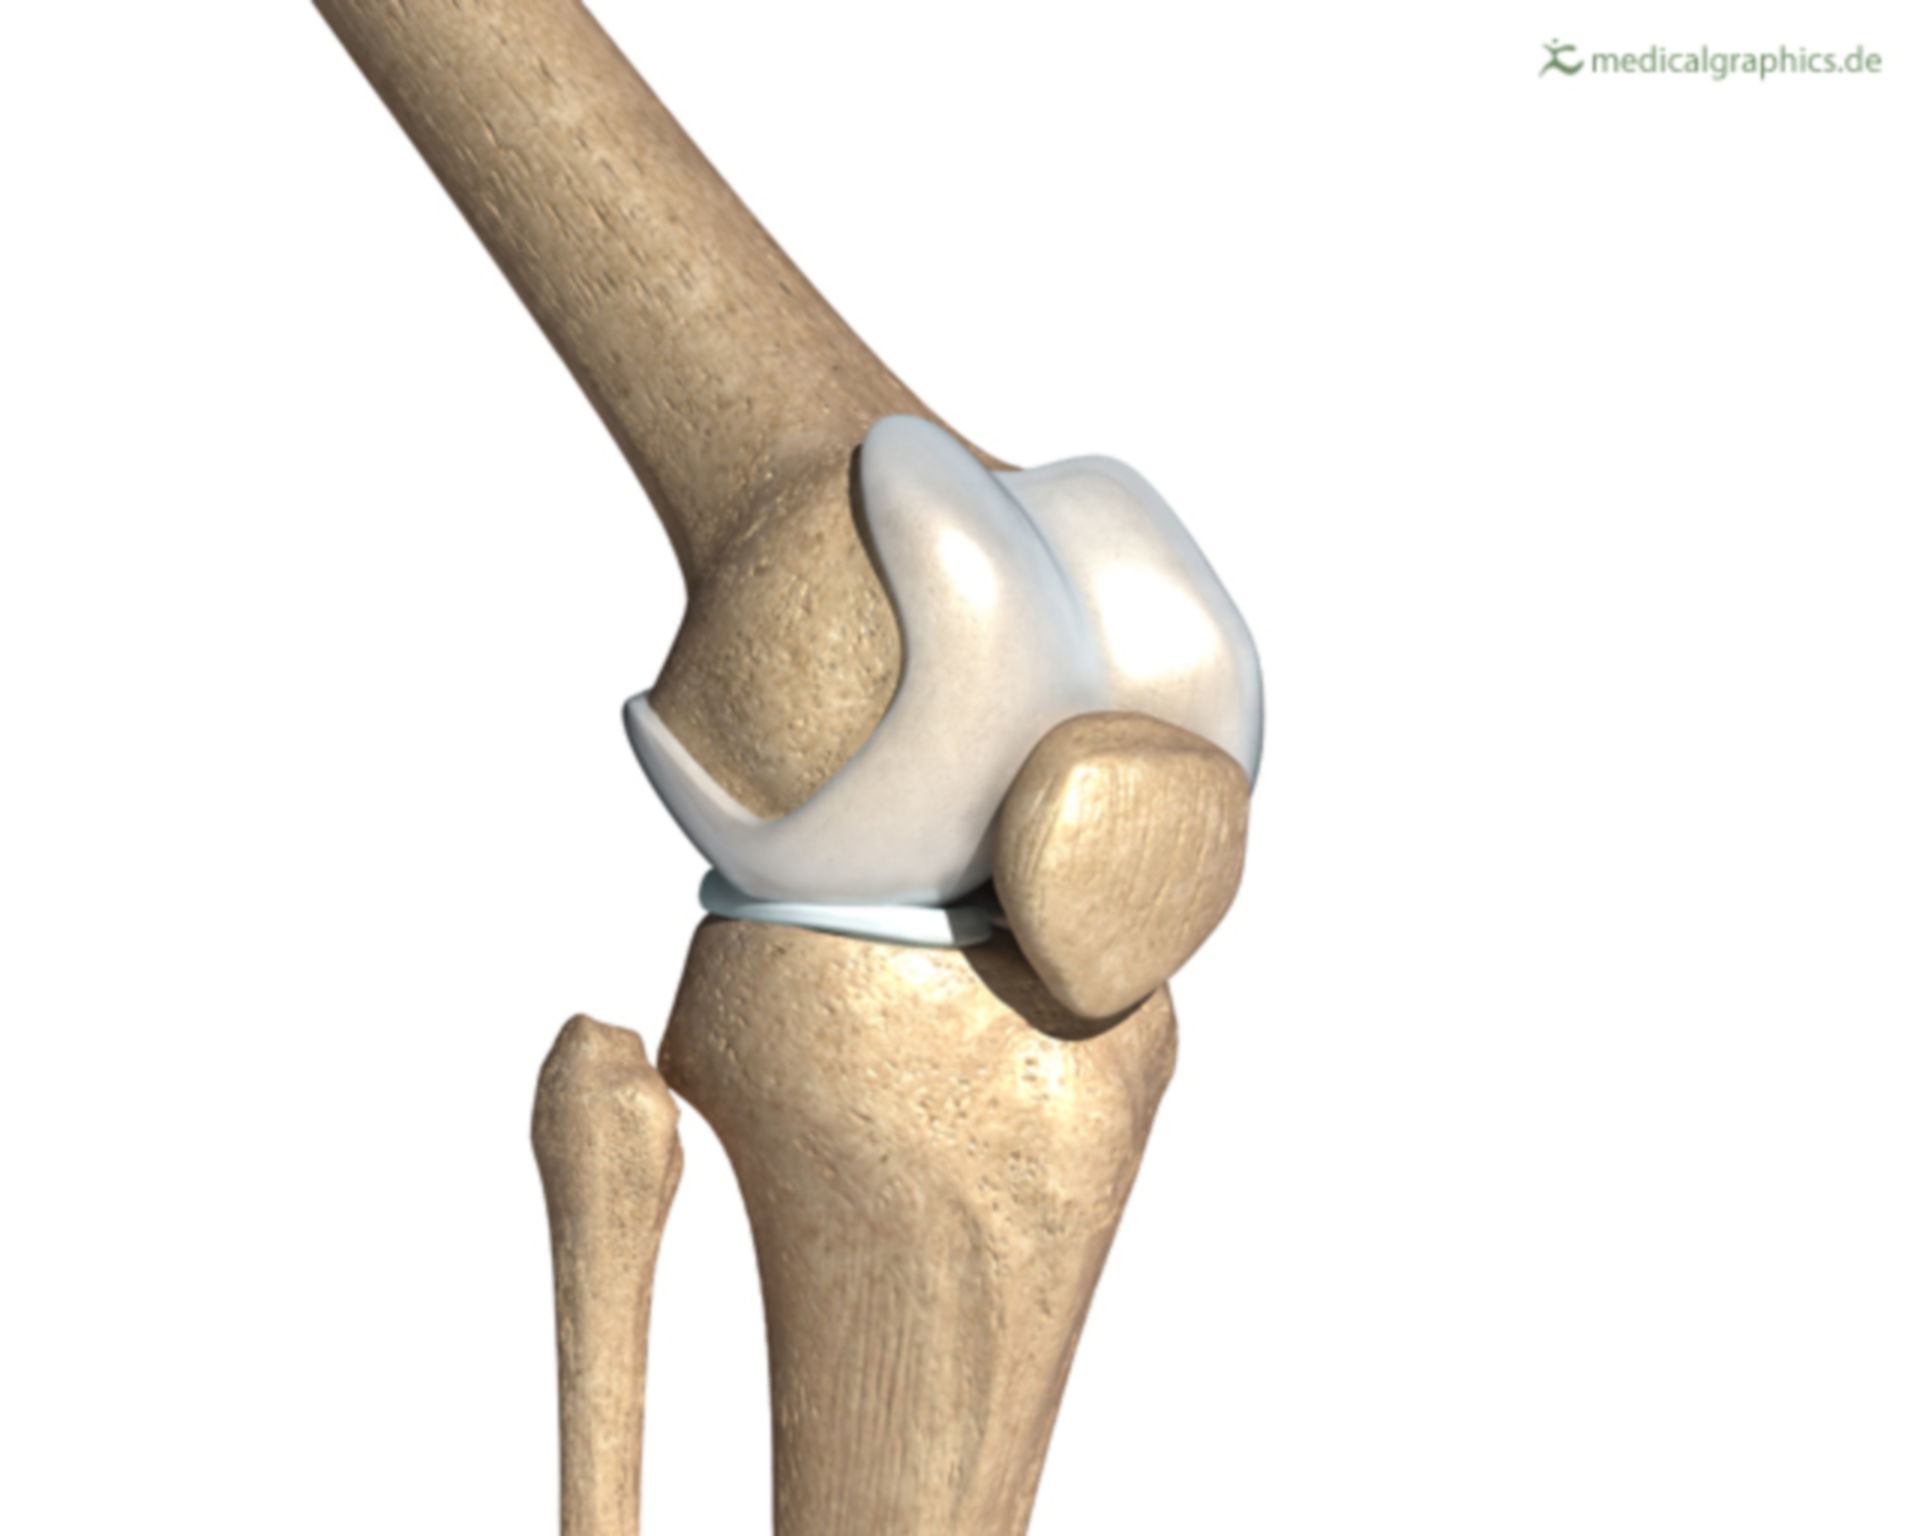 Knee joint (illustration)